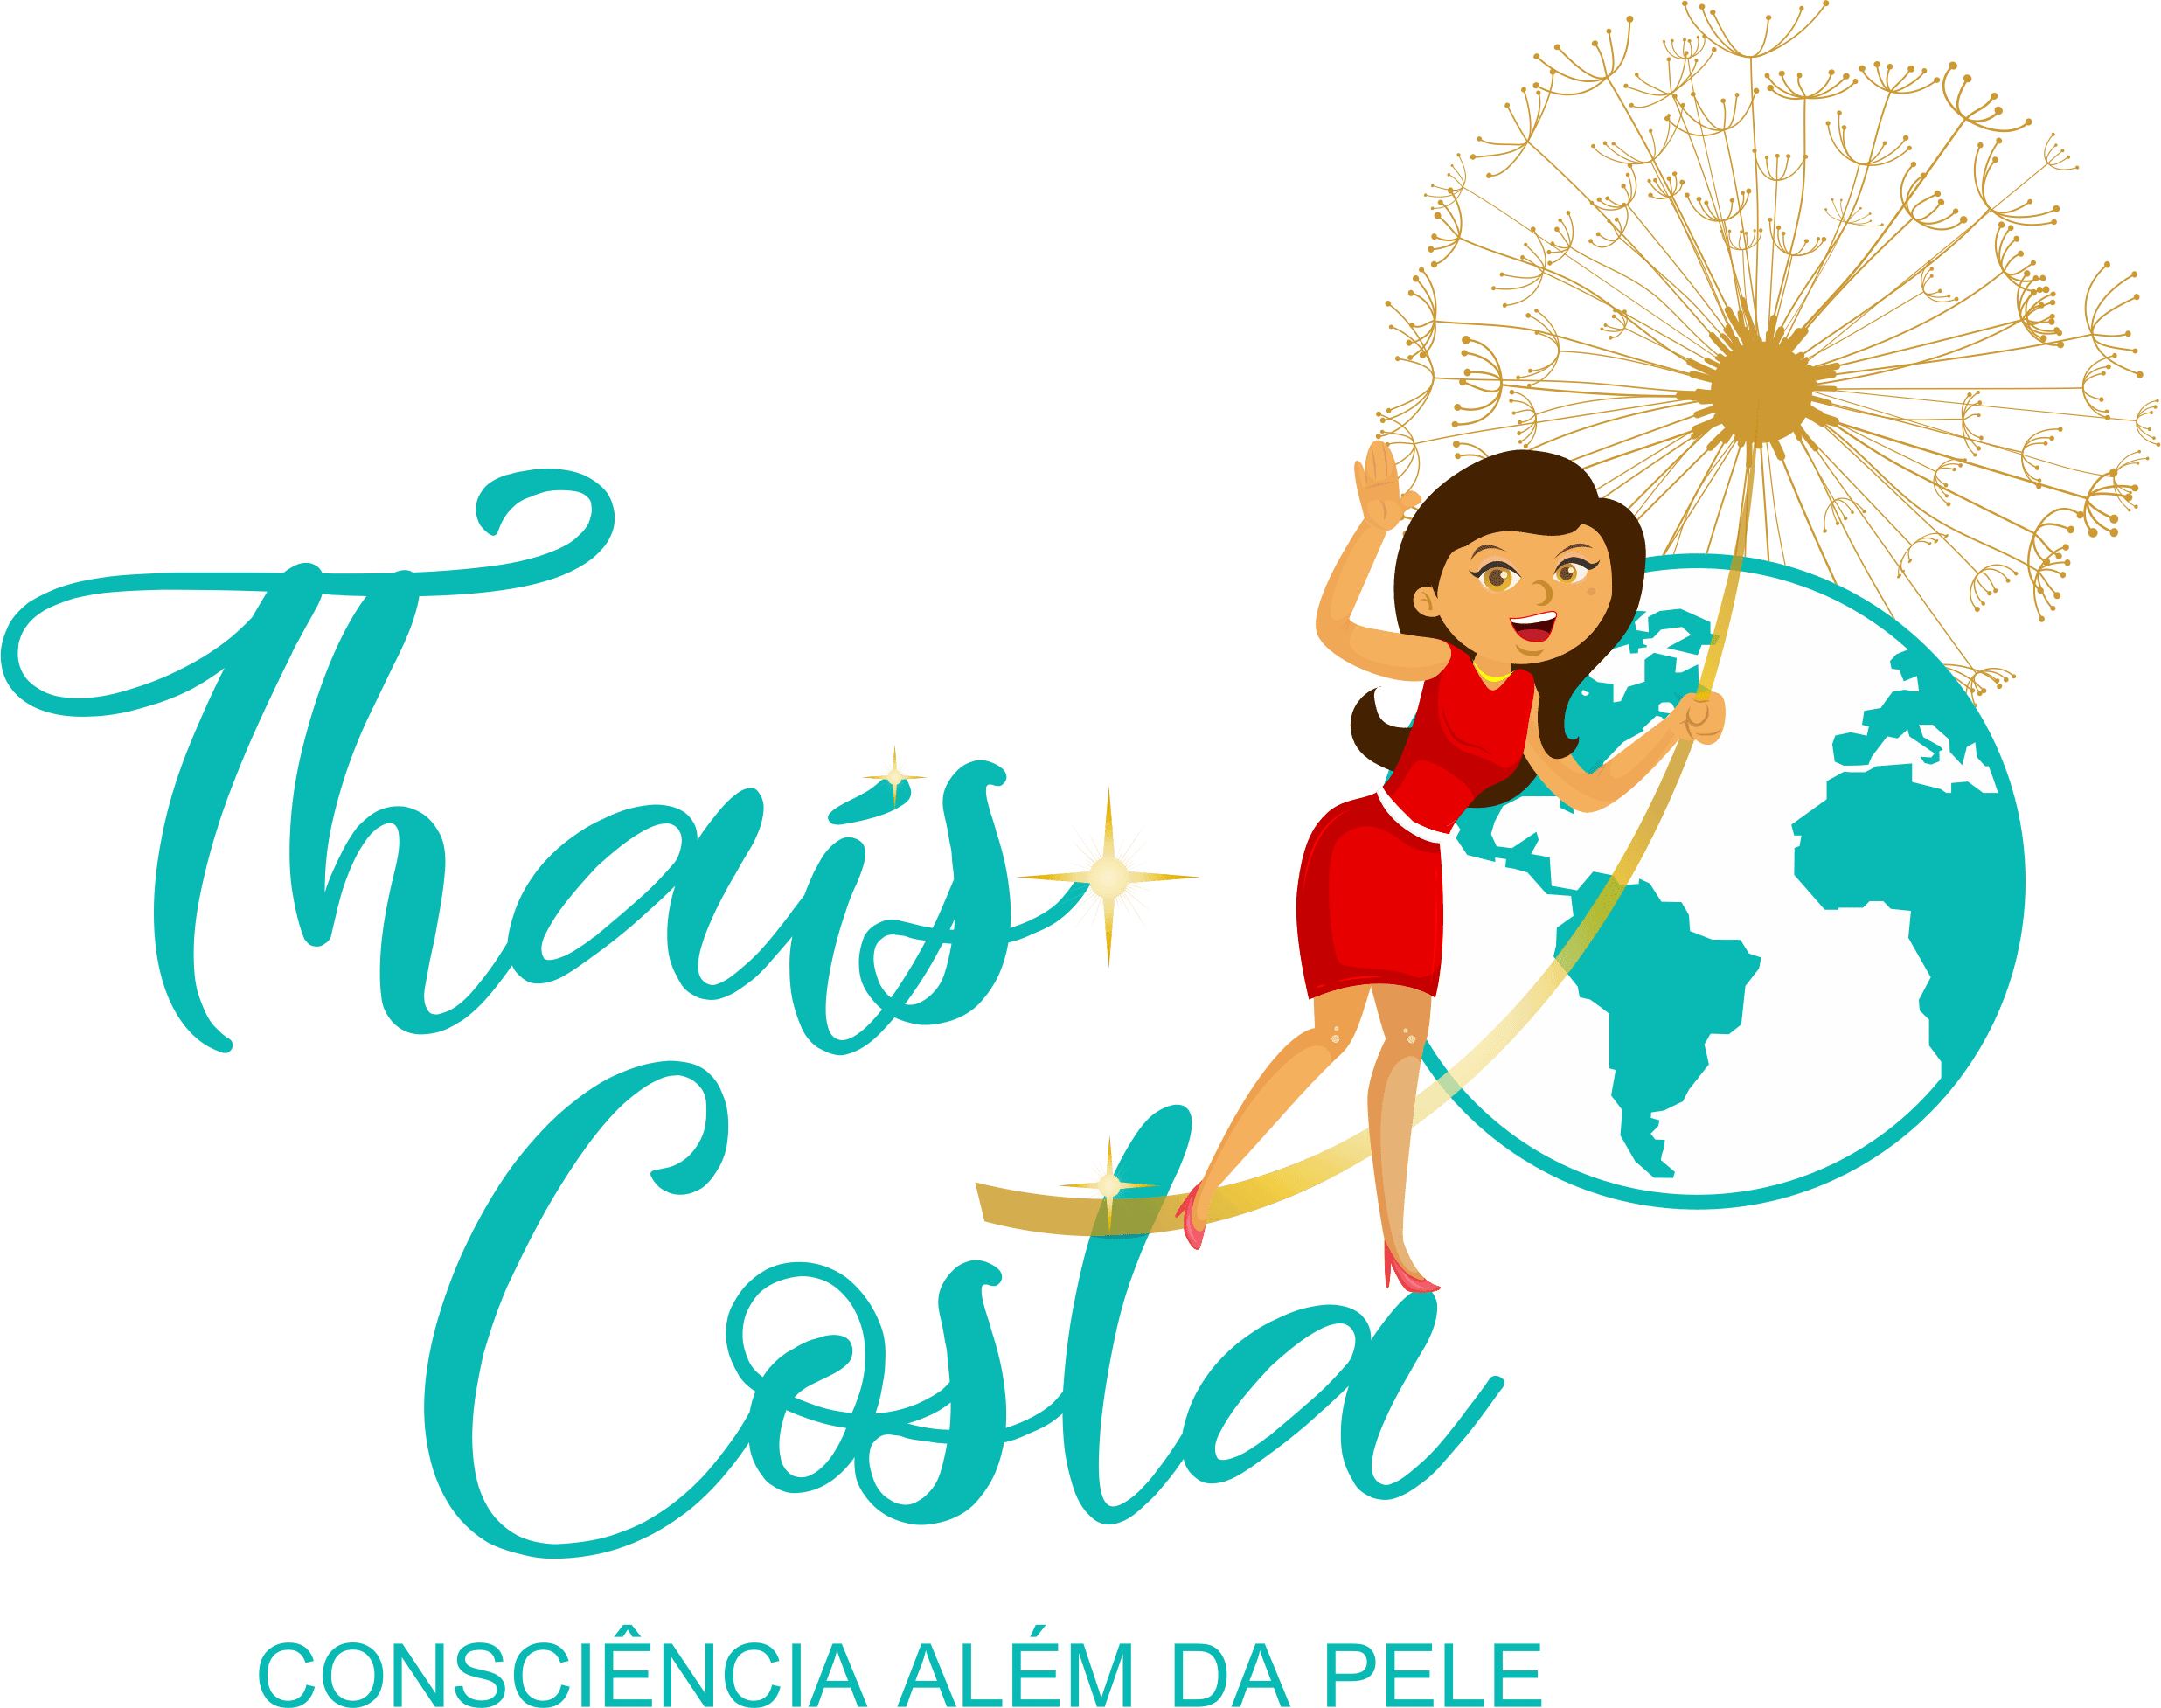 Thaís Costa “Consciência Além da Pele”